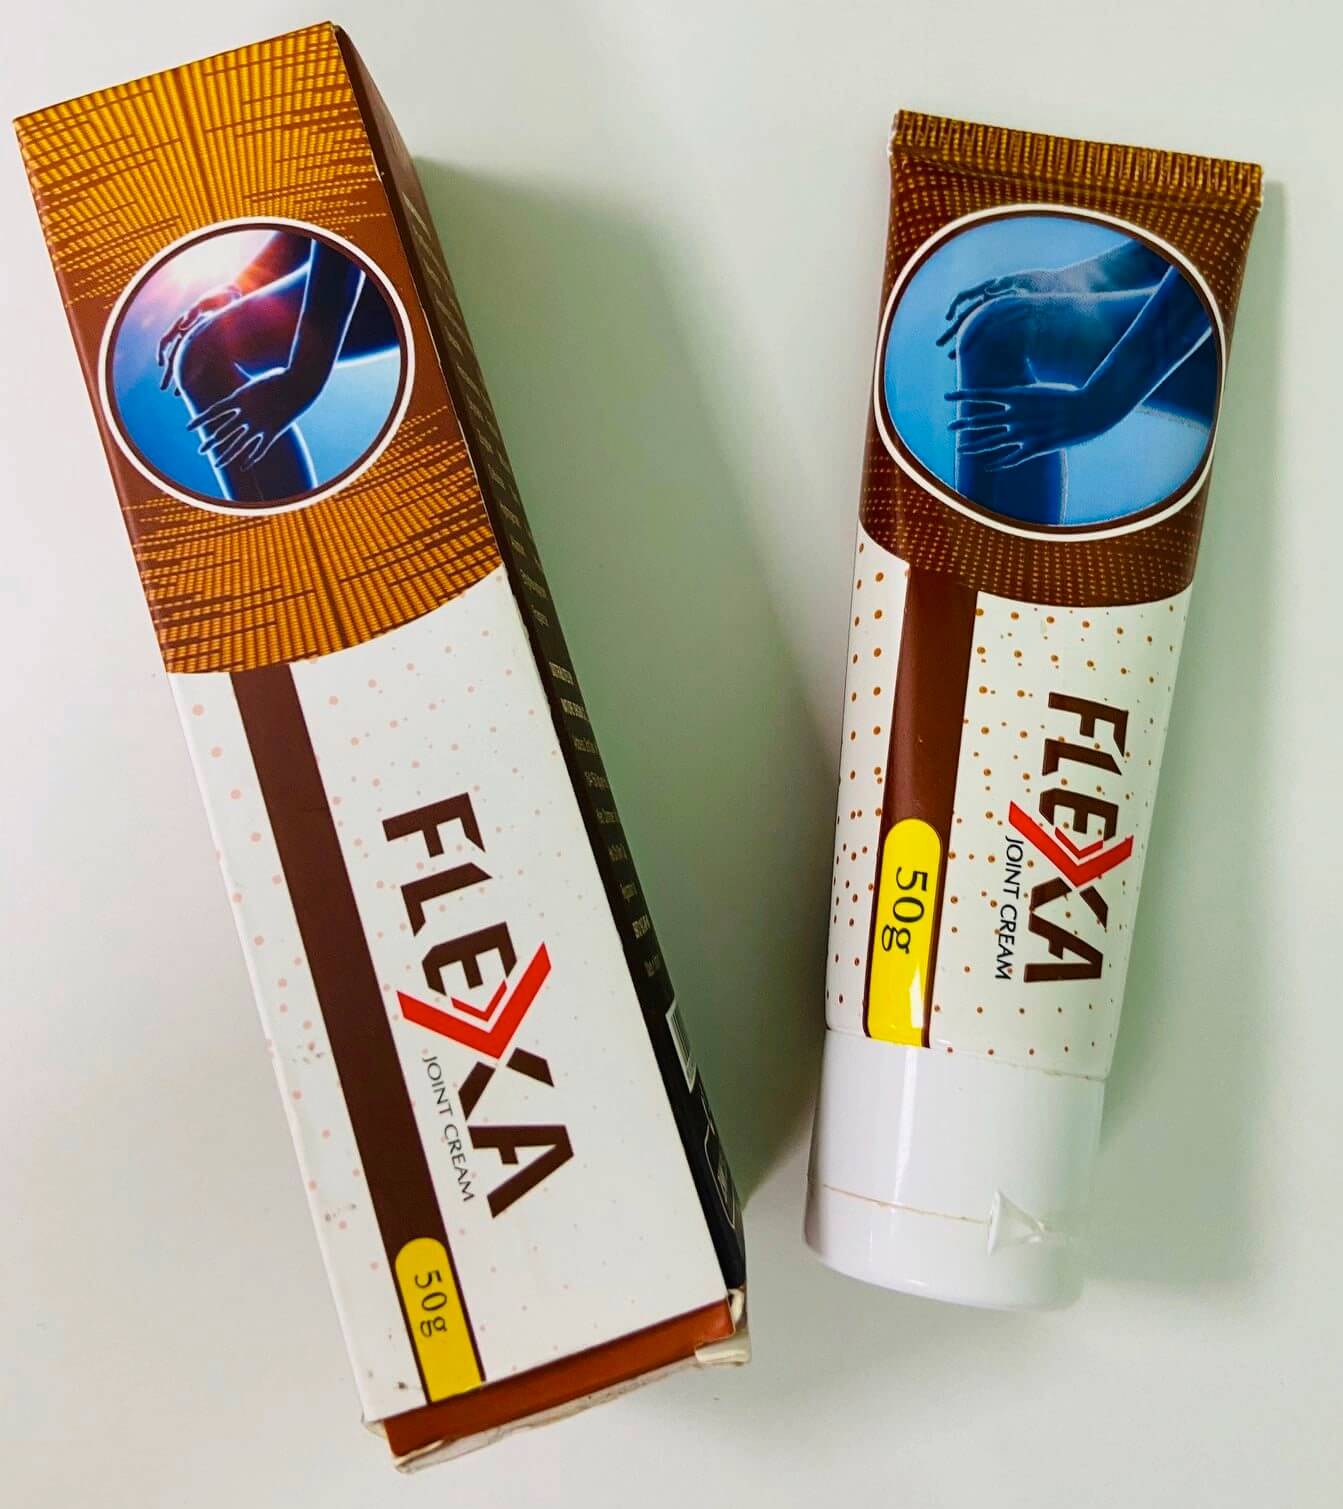 Kem Flexa là thuốc gì, có tốt không hình 12